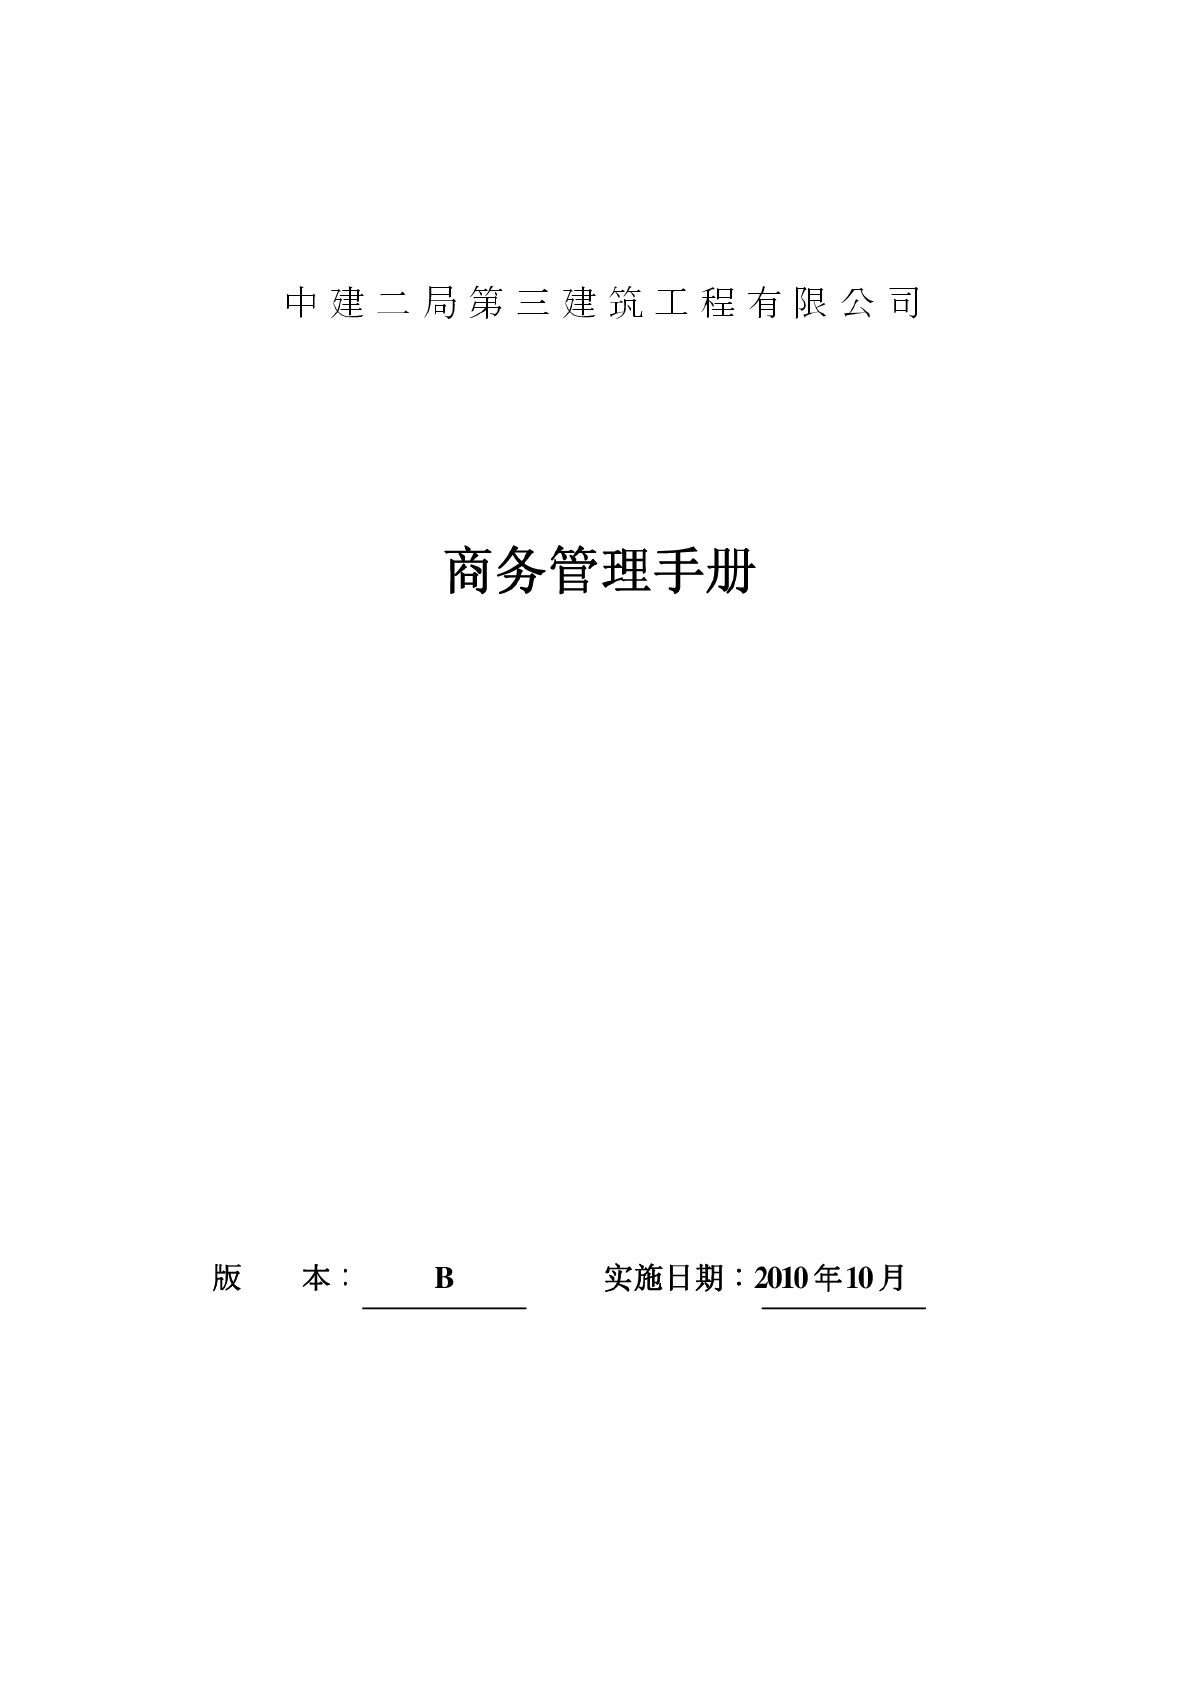 【江苏】某建筑工程施工项目商务管理手册汇编